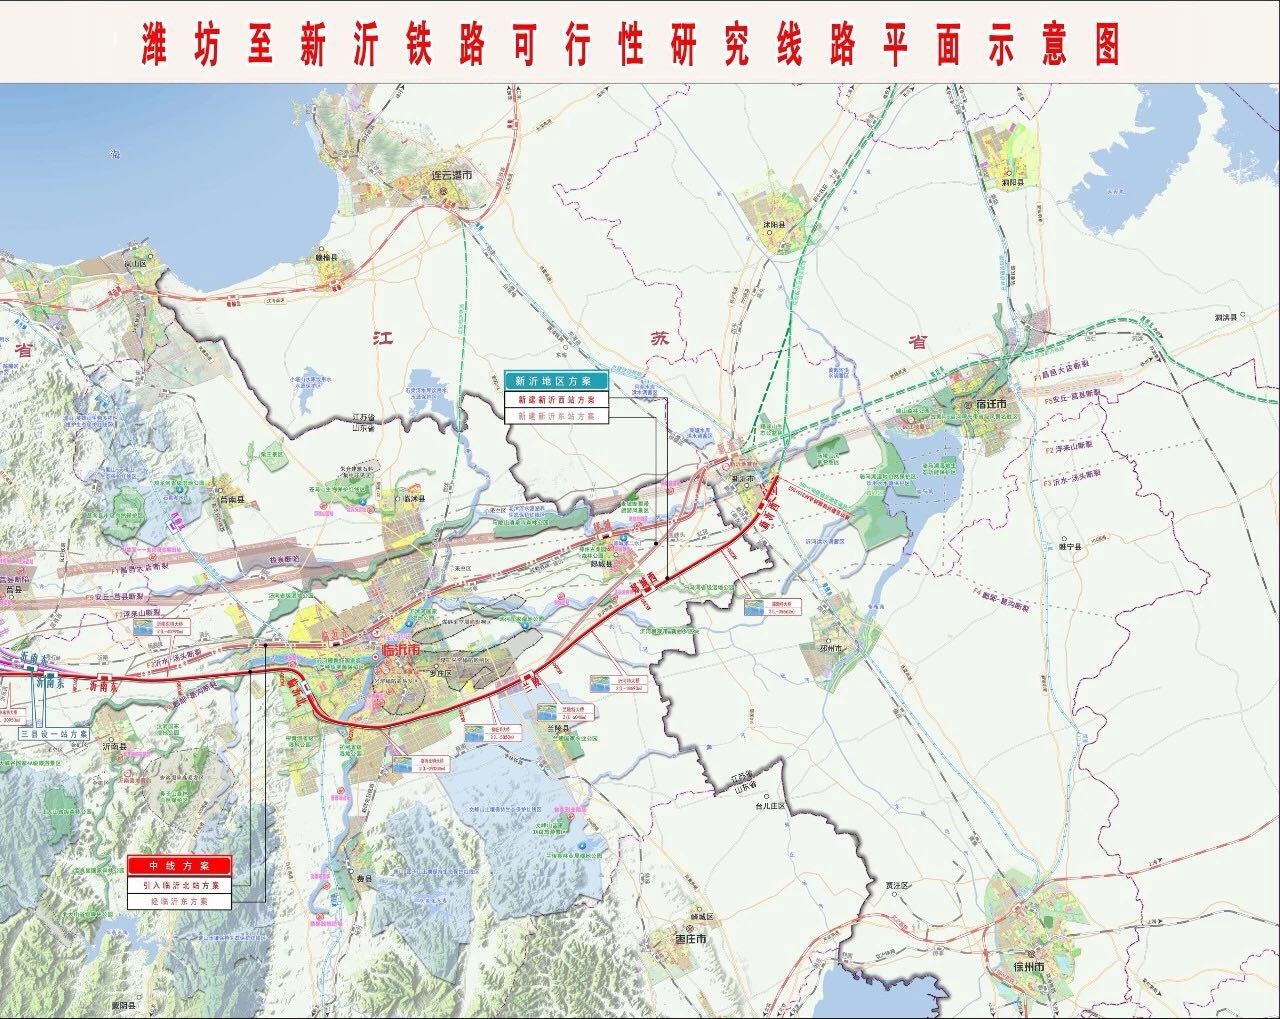 沂南,兰陵和郯城站站位选址基本完成.